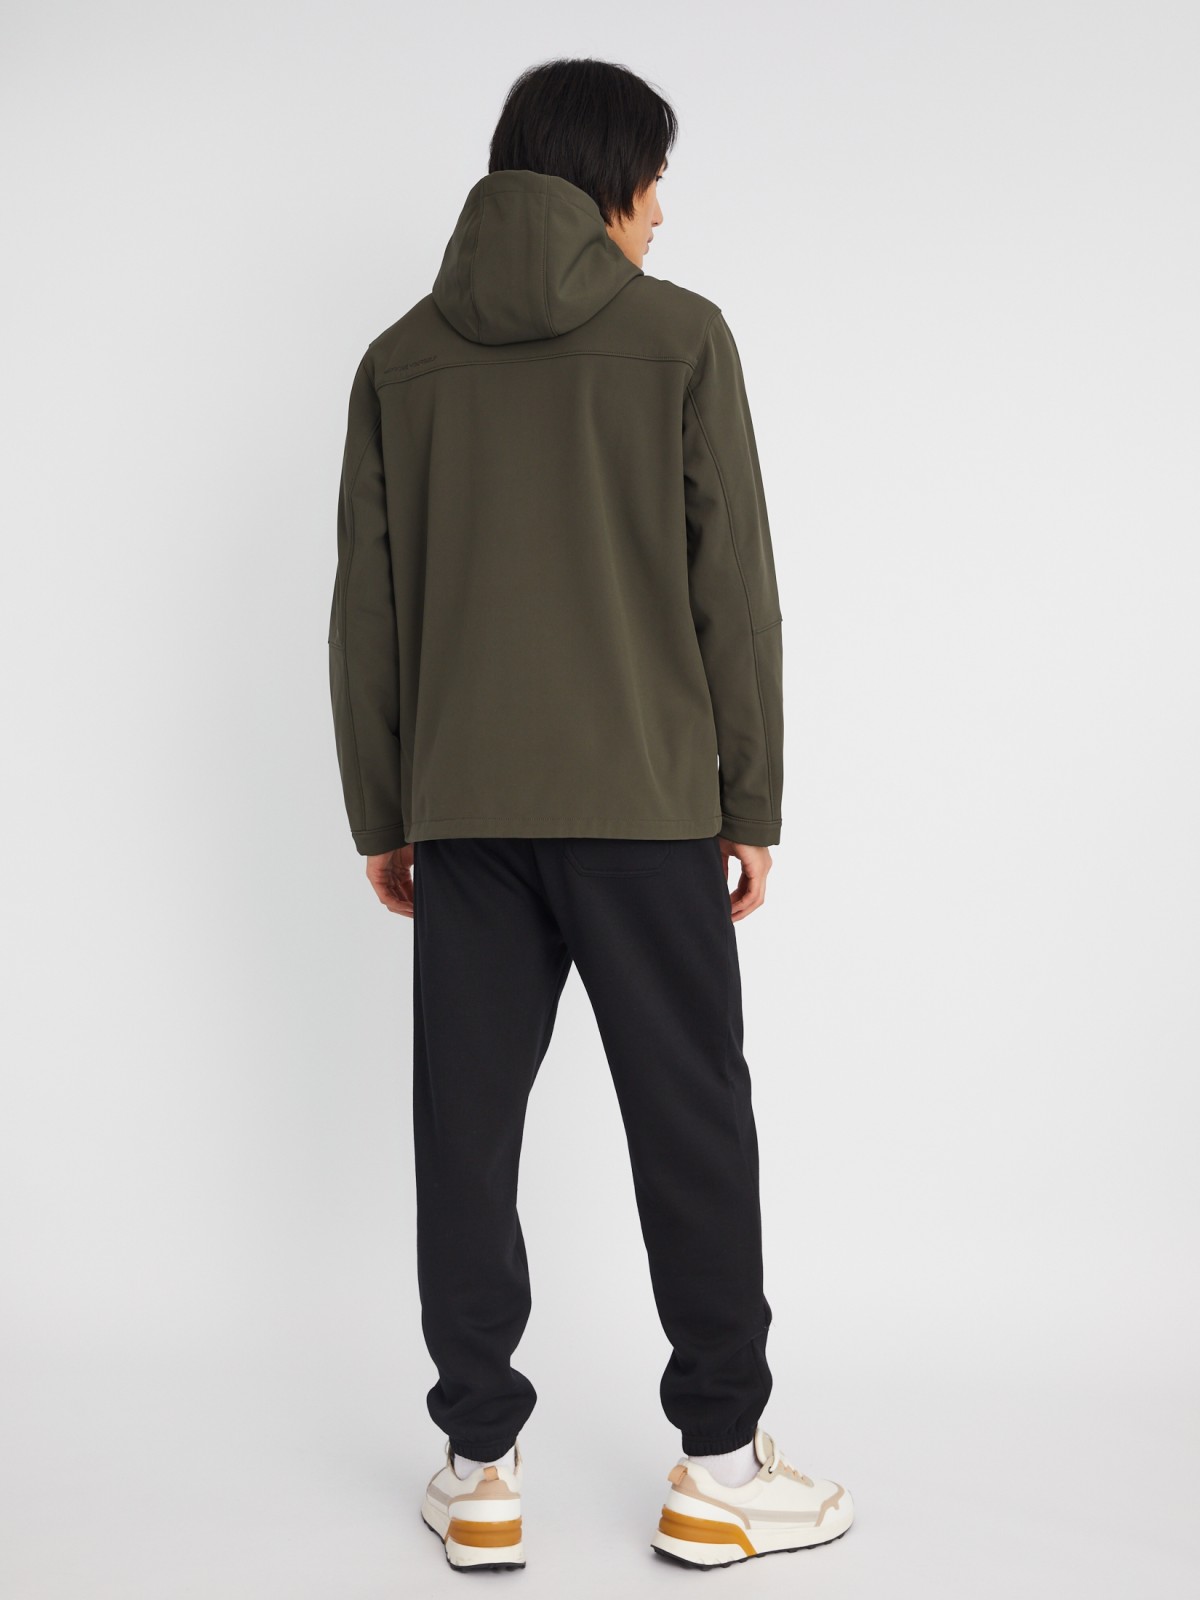 Лёгкая куртка-ветровка без утеплителя с капюшоном zolla 013325602014, цвет хаки, размер XXL - фото 6